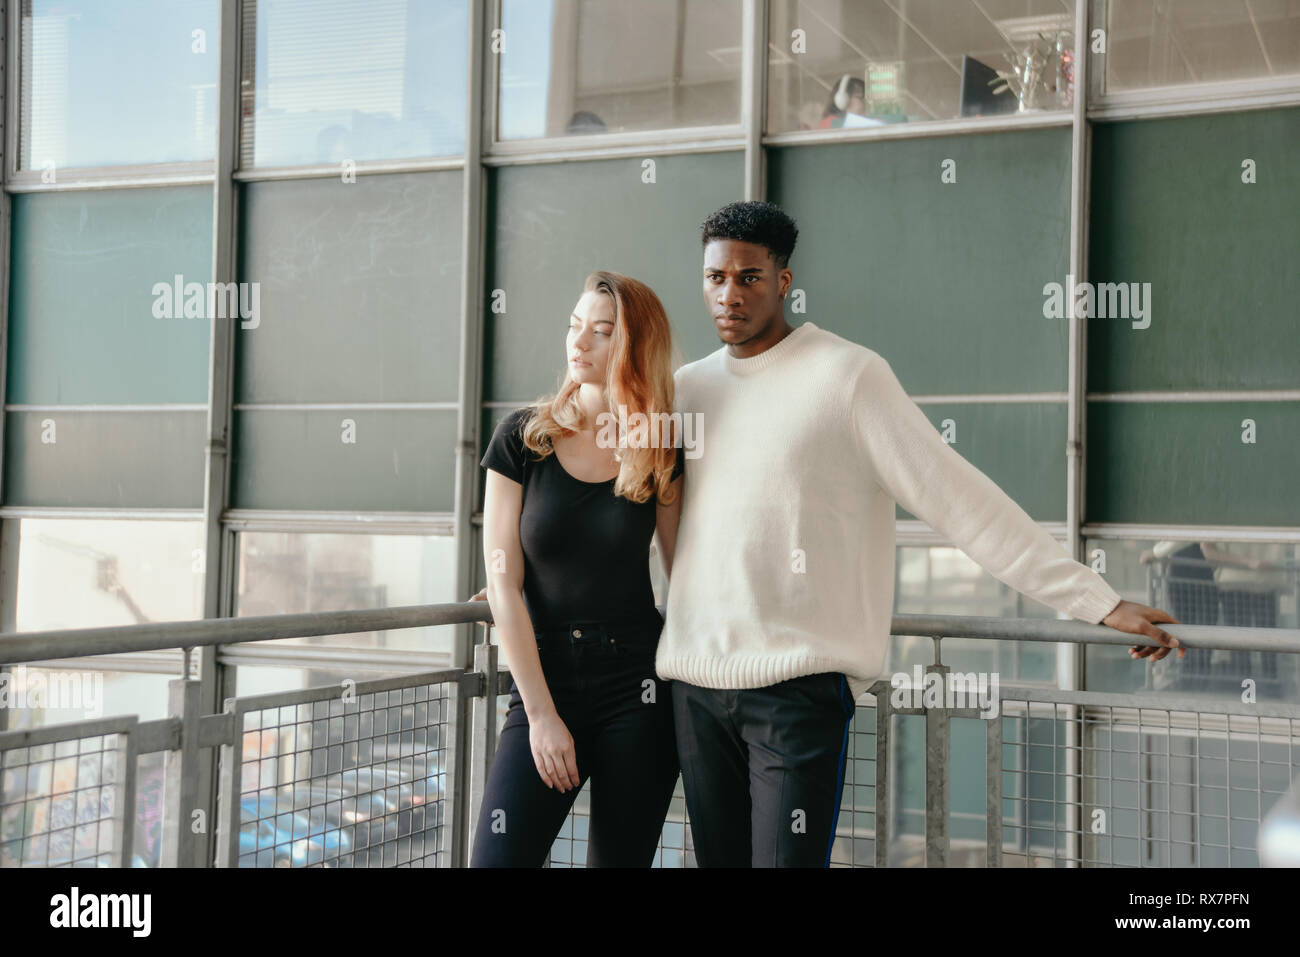 Ein gut aussehendes Paar stehen vor einem Modernistischen Tower Block in einer Stadt. Sie weiß ist er schwarz ist, sie sind ernst Stockfoto